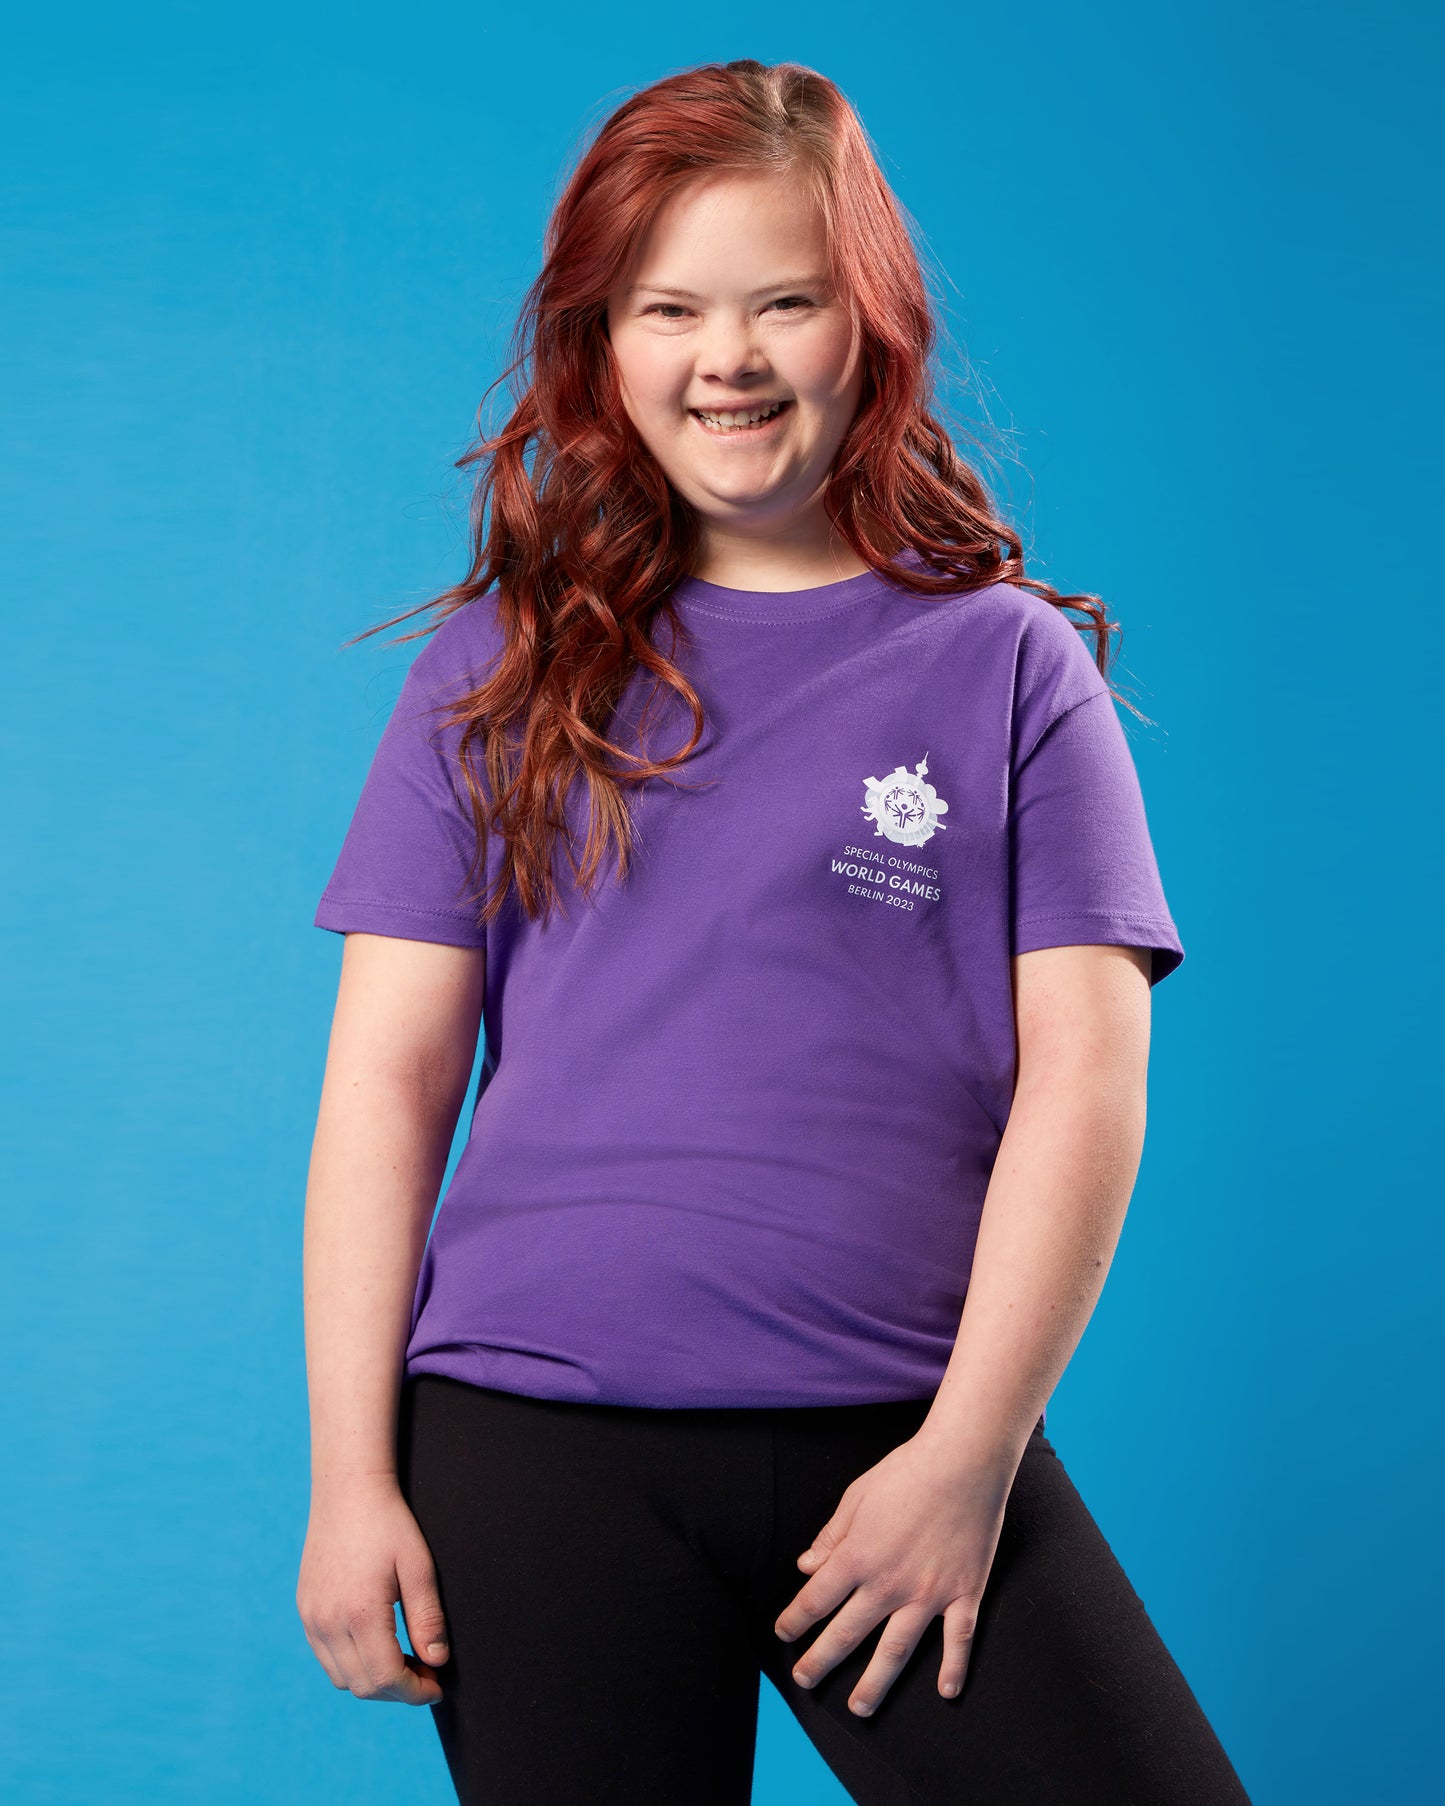 Mädchen trägt violettes T-Shirt mit kleinem Weltspiele Logo auf der Brust